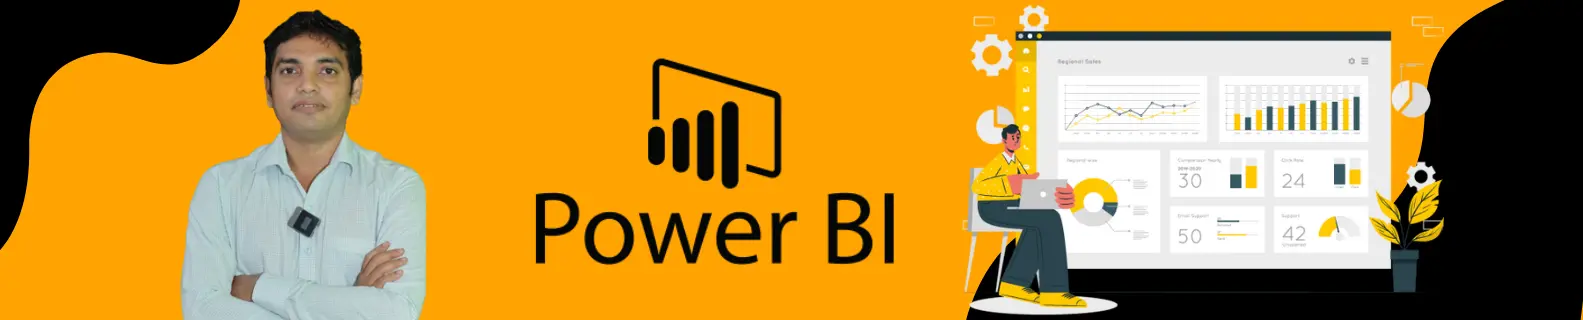 Power BI classes in Pune